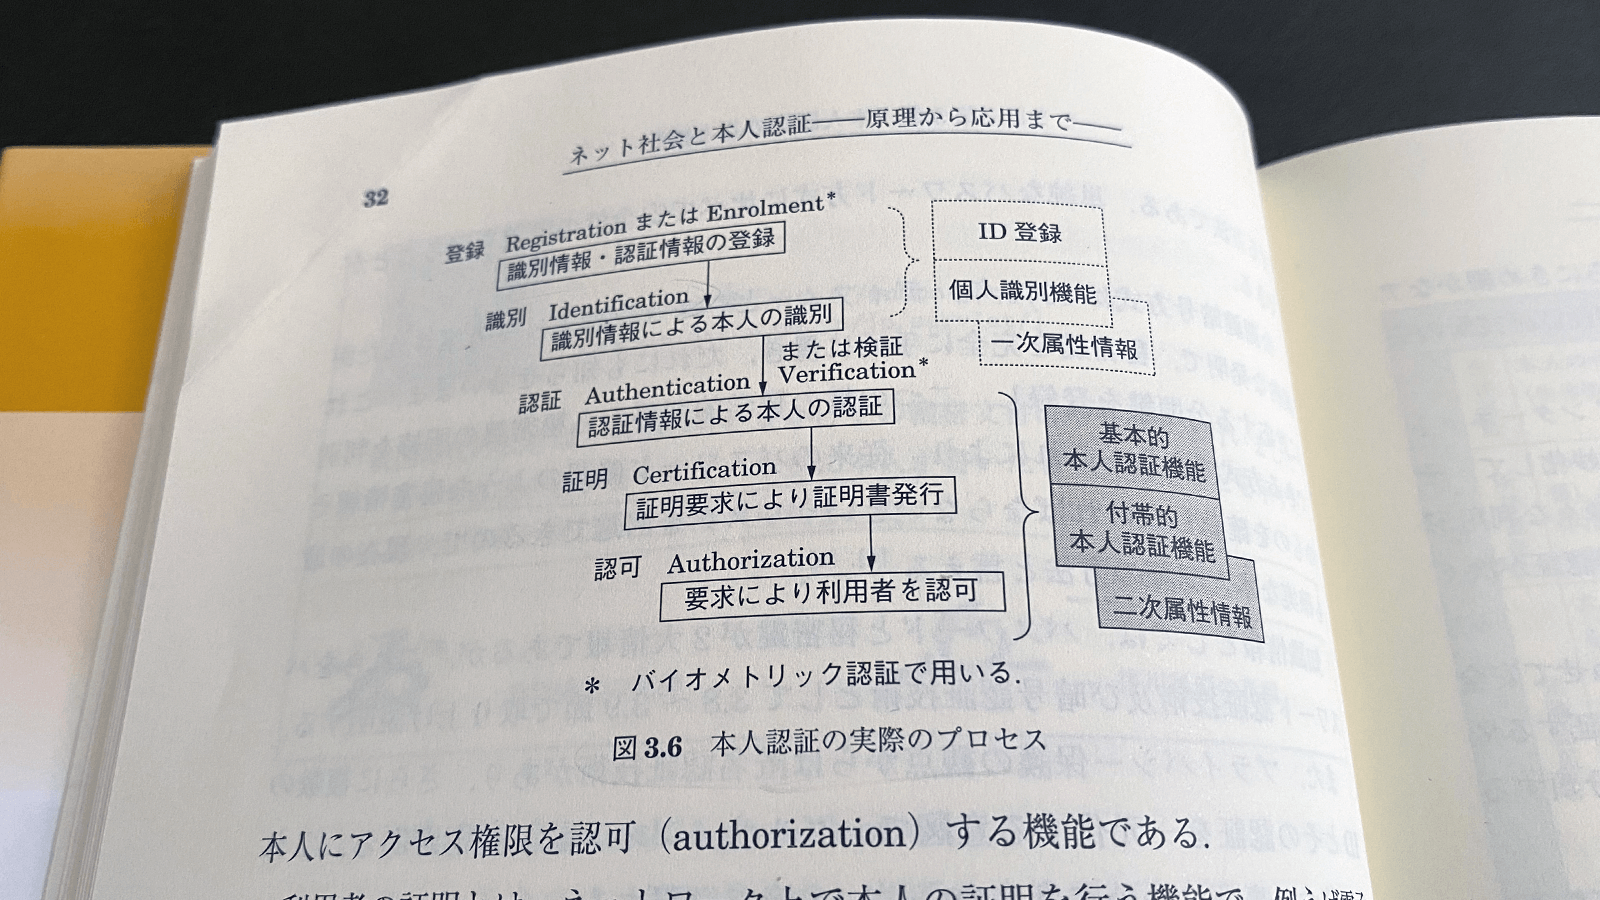 板倉征男・外川政夫『ネット社会と本人認証』（電子情報通信学会, 2010）P32